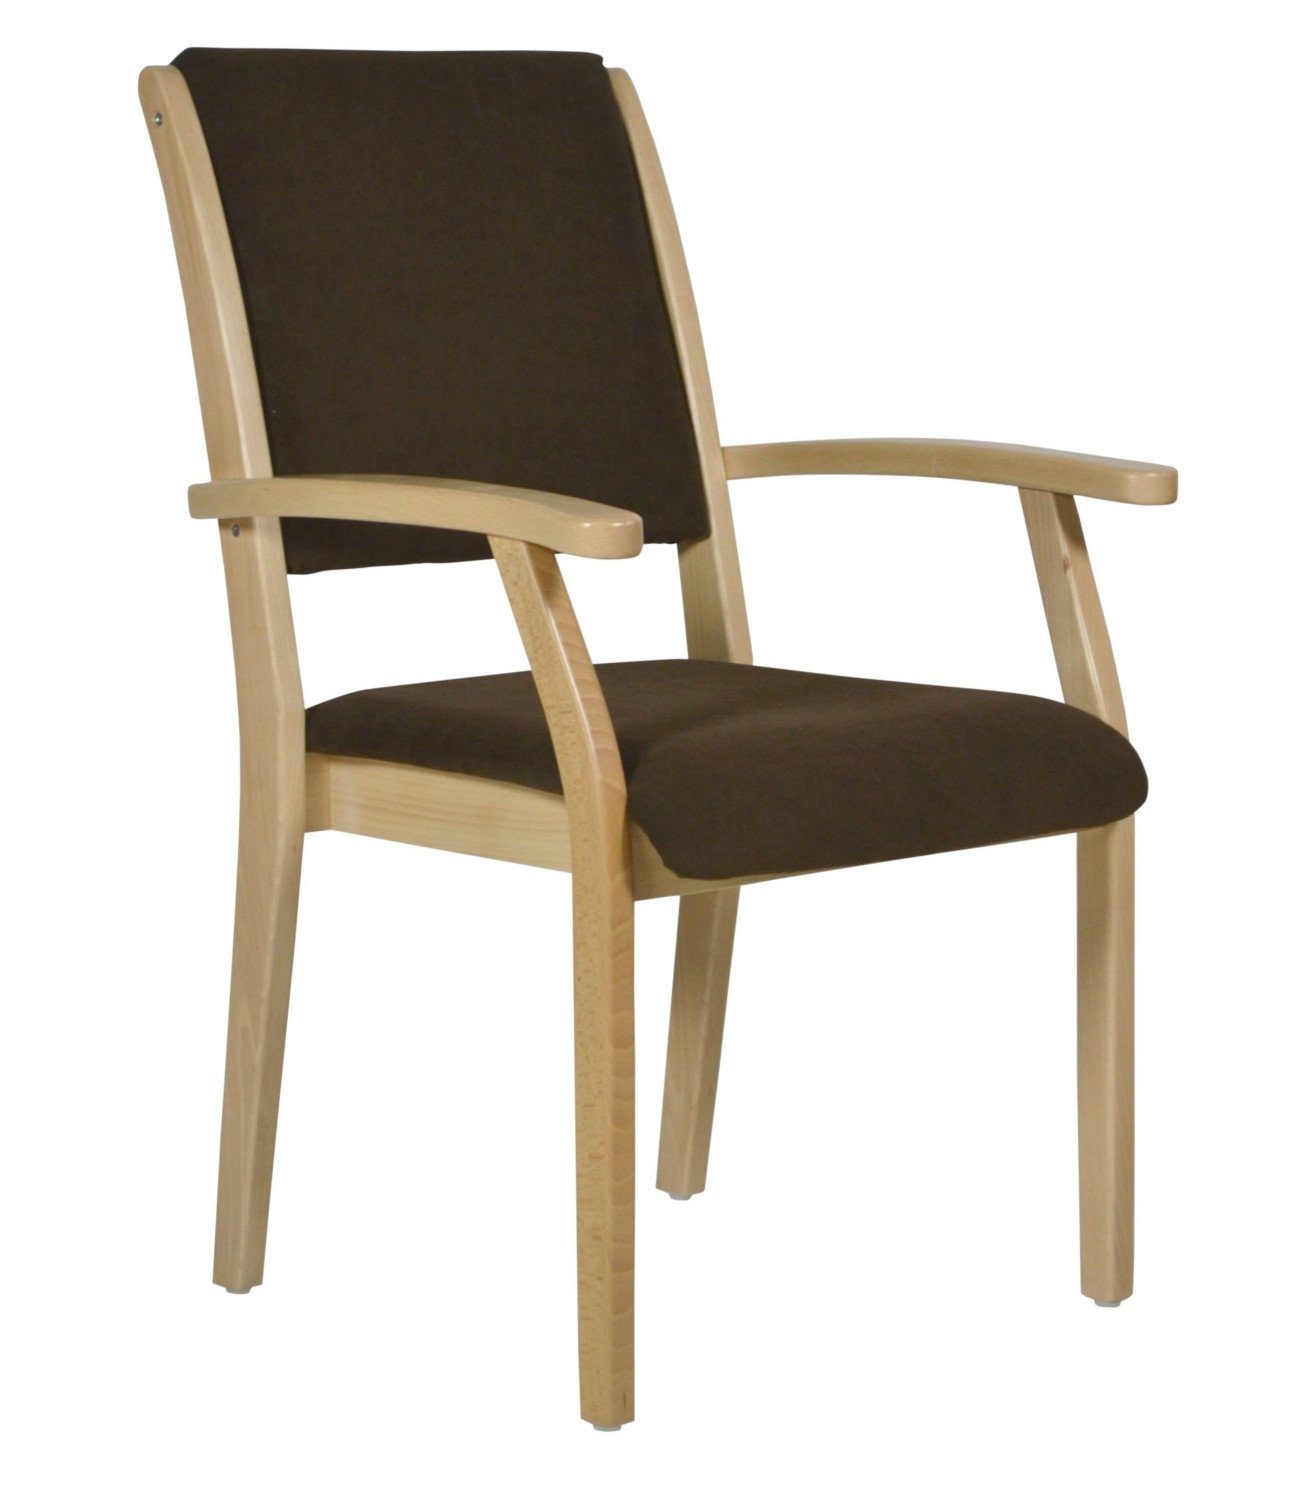 Devita Stuhl Seniorenstuhl Pflegestuhl Kerry - Verschiedene Sitzhöhen (Einzel), stapelbar, standfest, verschieden Sitzhöhe wählbar, versch. Bezüge wählbar DB94 Microfaser Braun